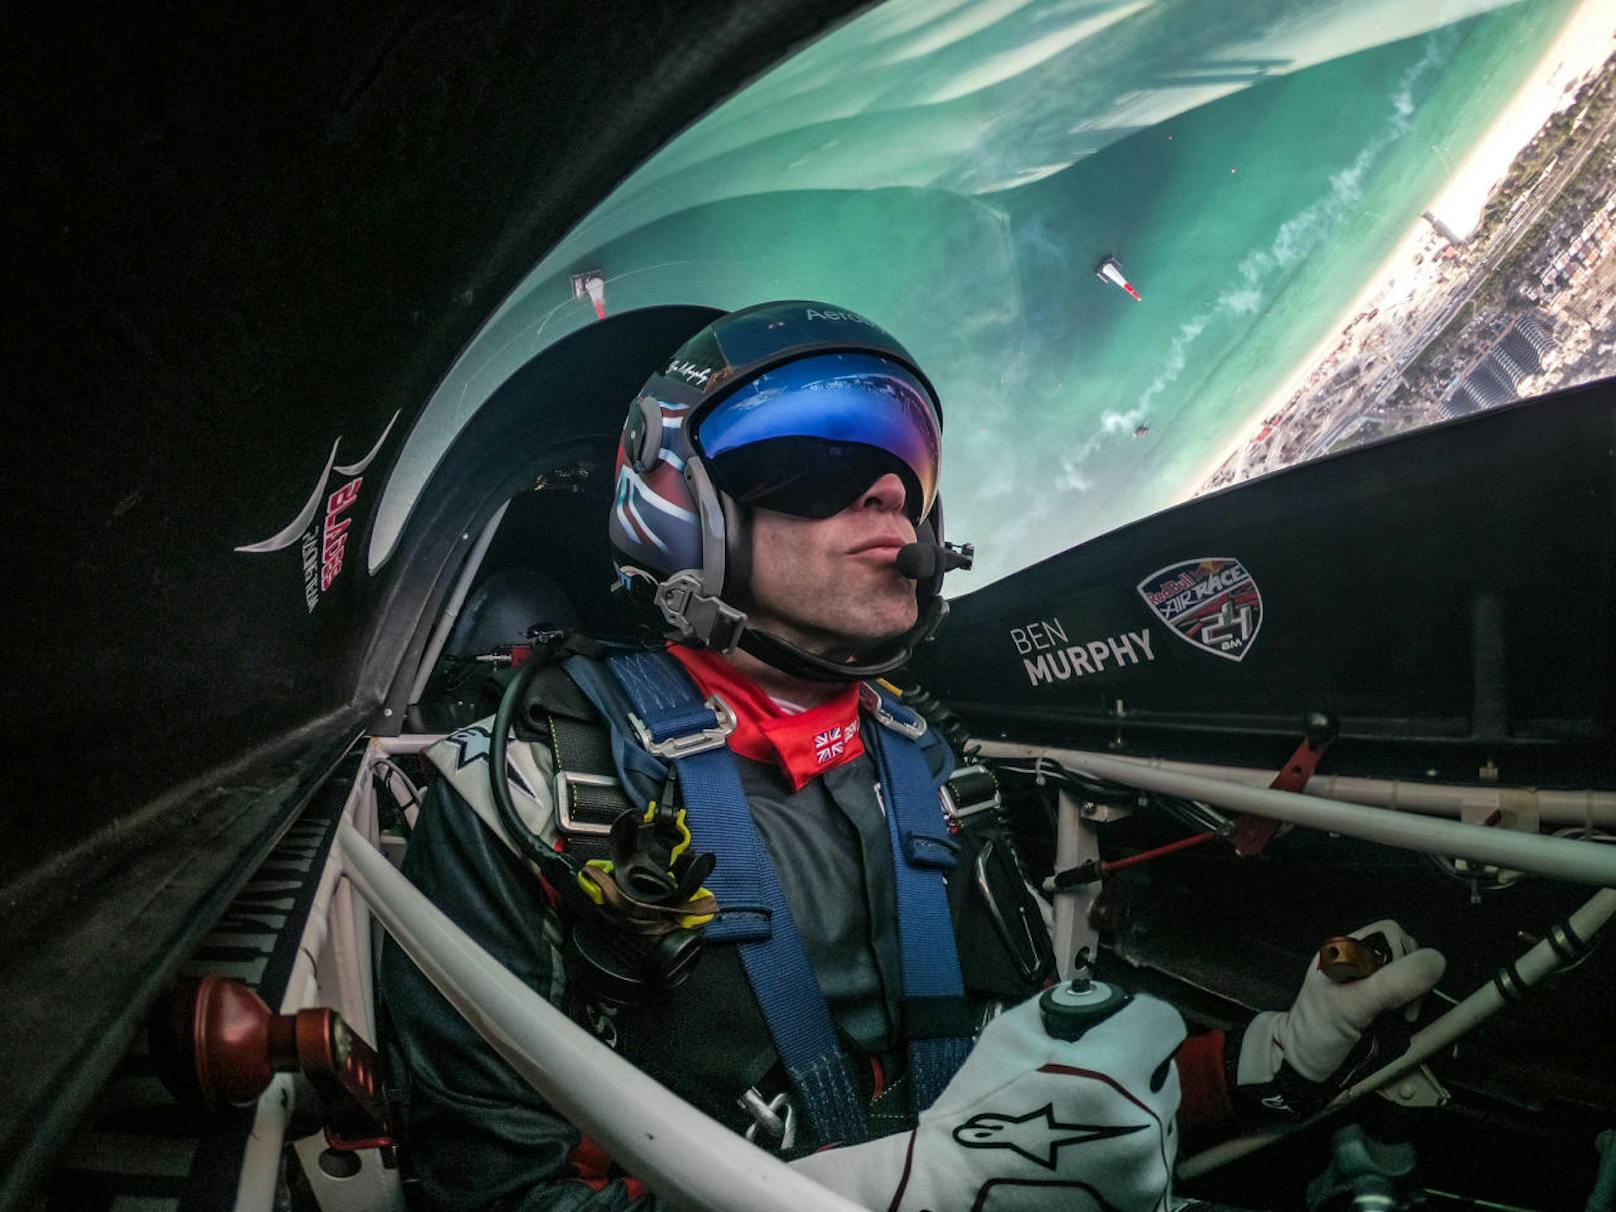 Ben Murphy (GBR) beim Trainingstag der ersten Runde der Red Bull Air Race World Championship in Abu Dhabi, Vereinigte Arabische Emirate am 01. Februar 2018. (Foto: Joerg Mitter / Red Bull Content Pool)